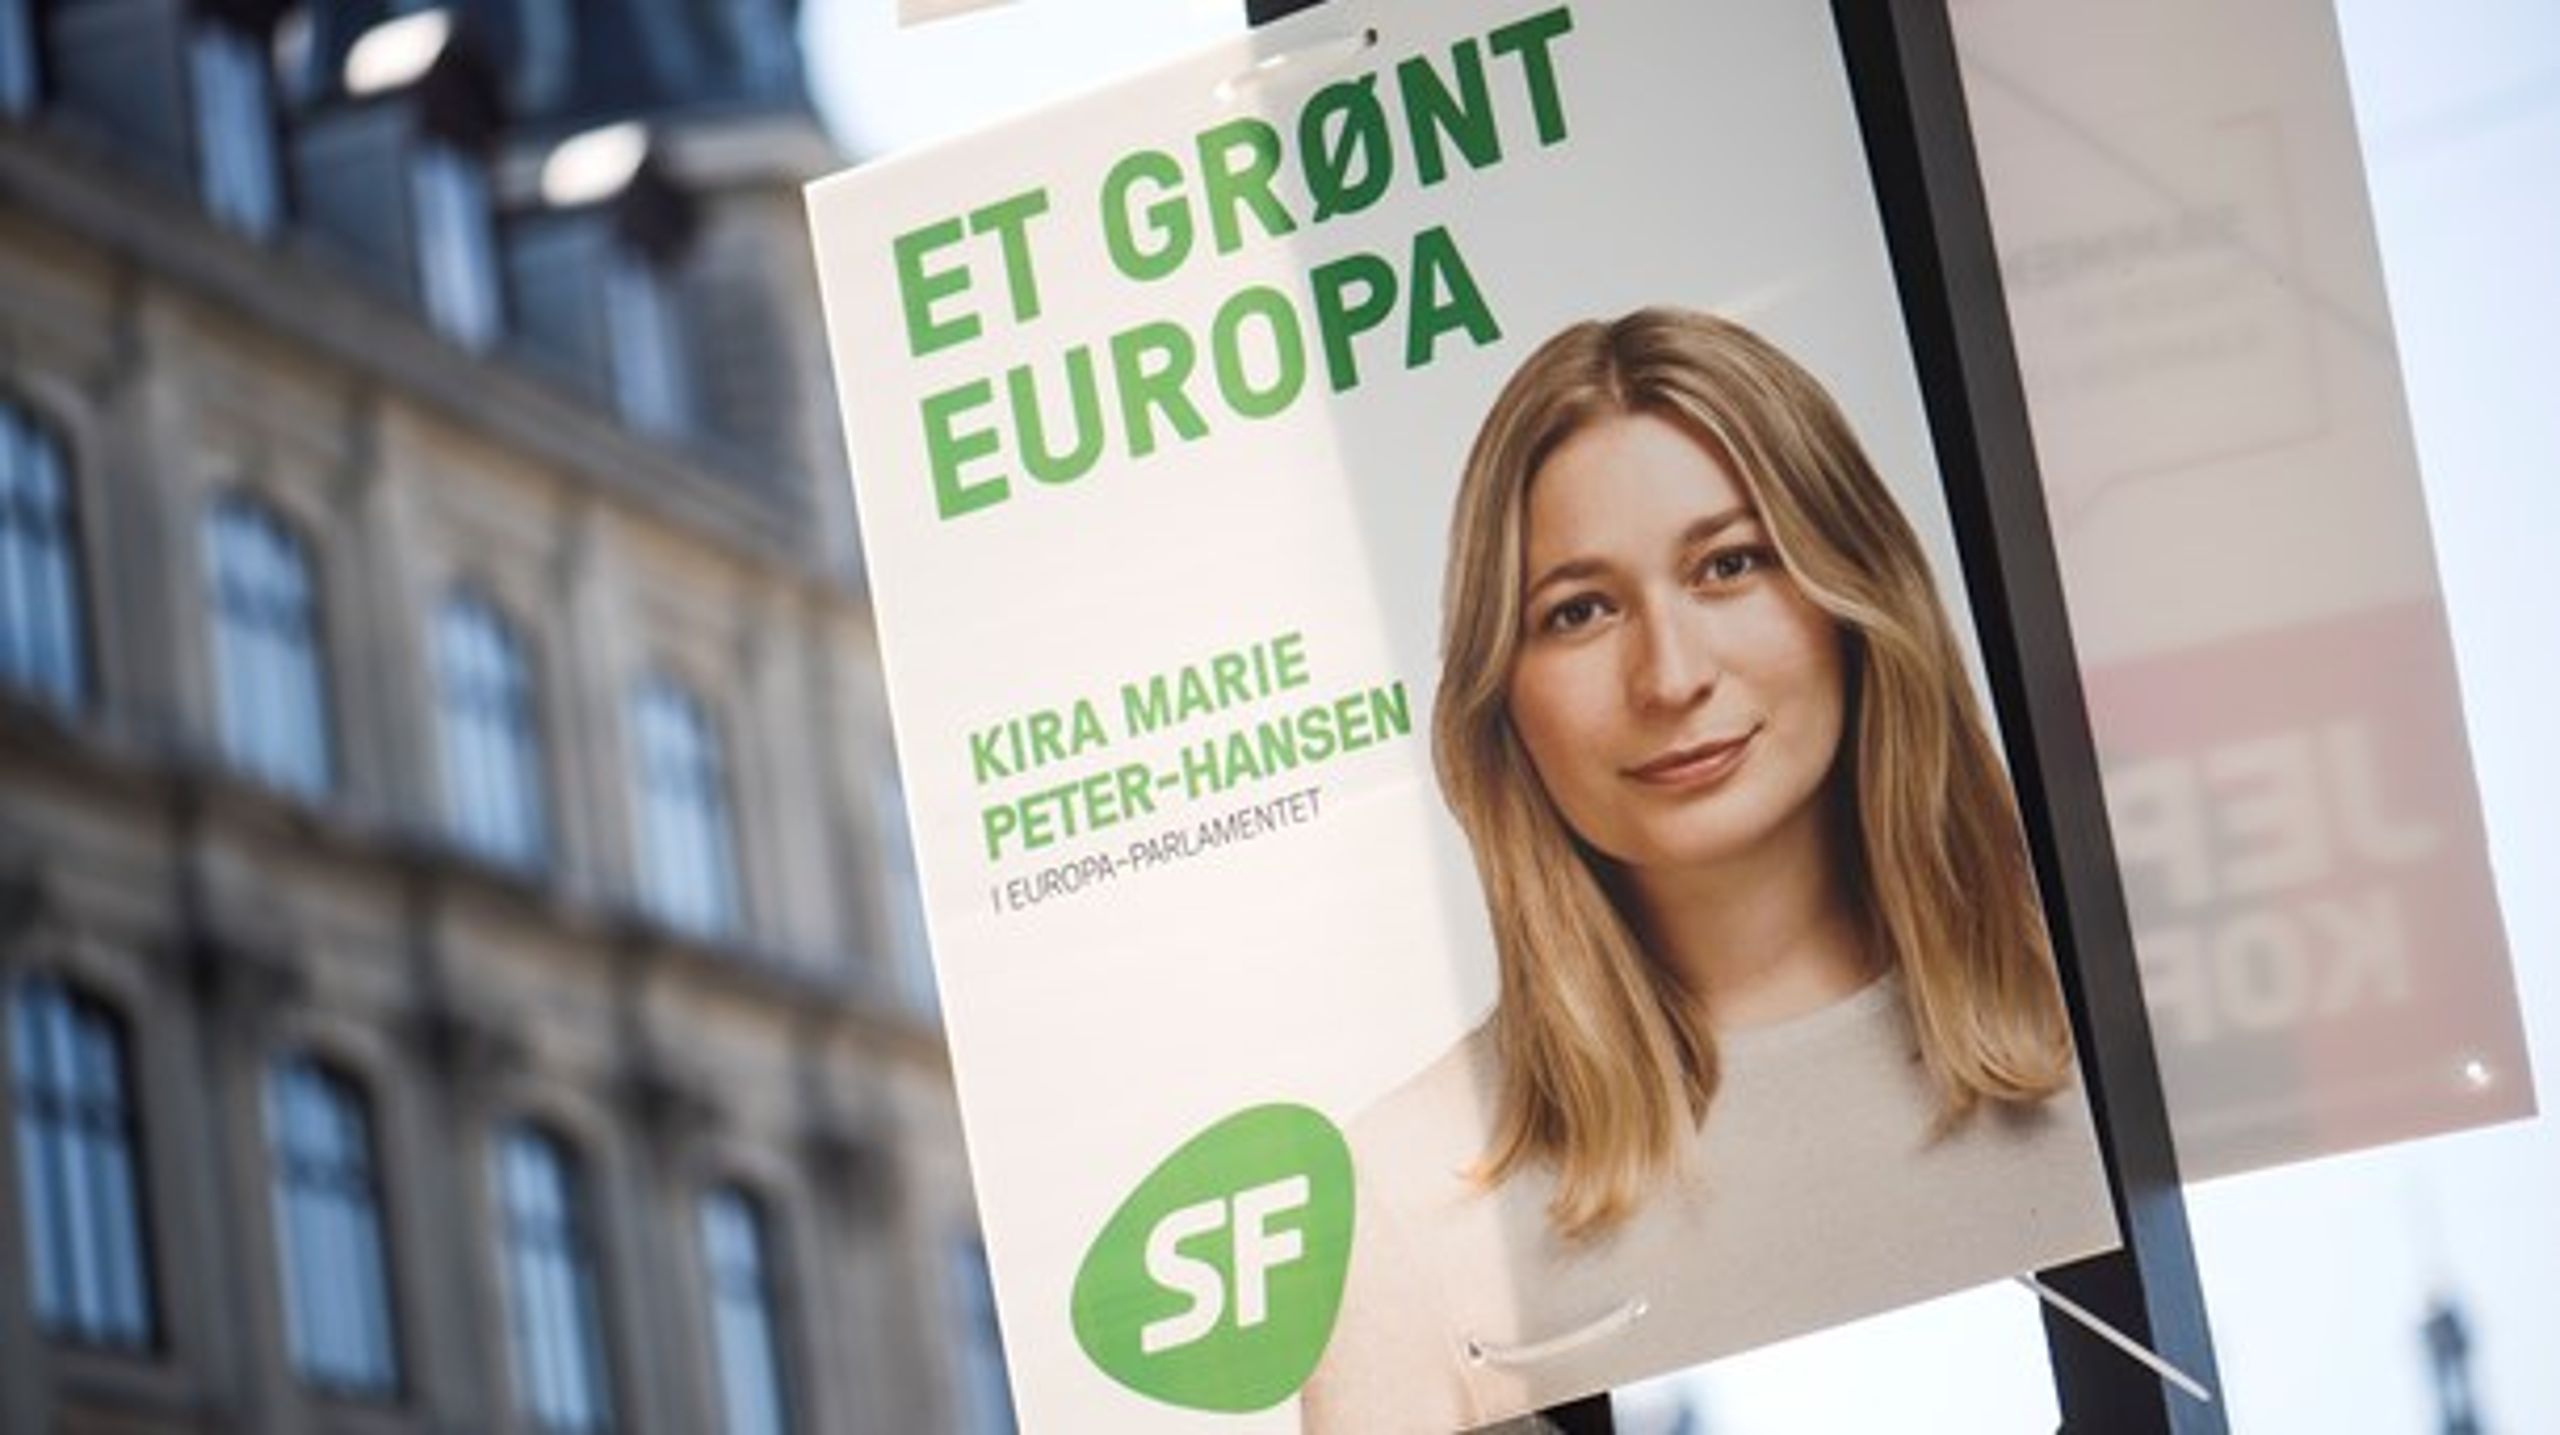 Fremover skal 50 procent af EU’s budget øremærkes til klimarelaterede
udgifter og forskning, mener Kira Marie Peter-Hansen.&nbsp;